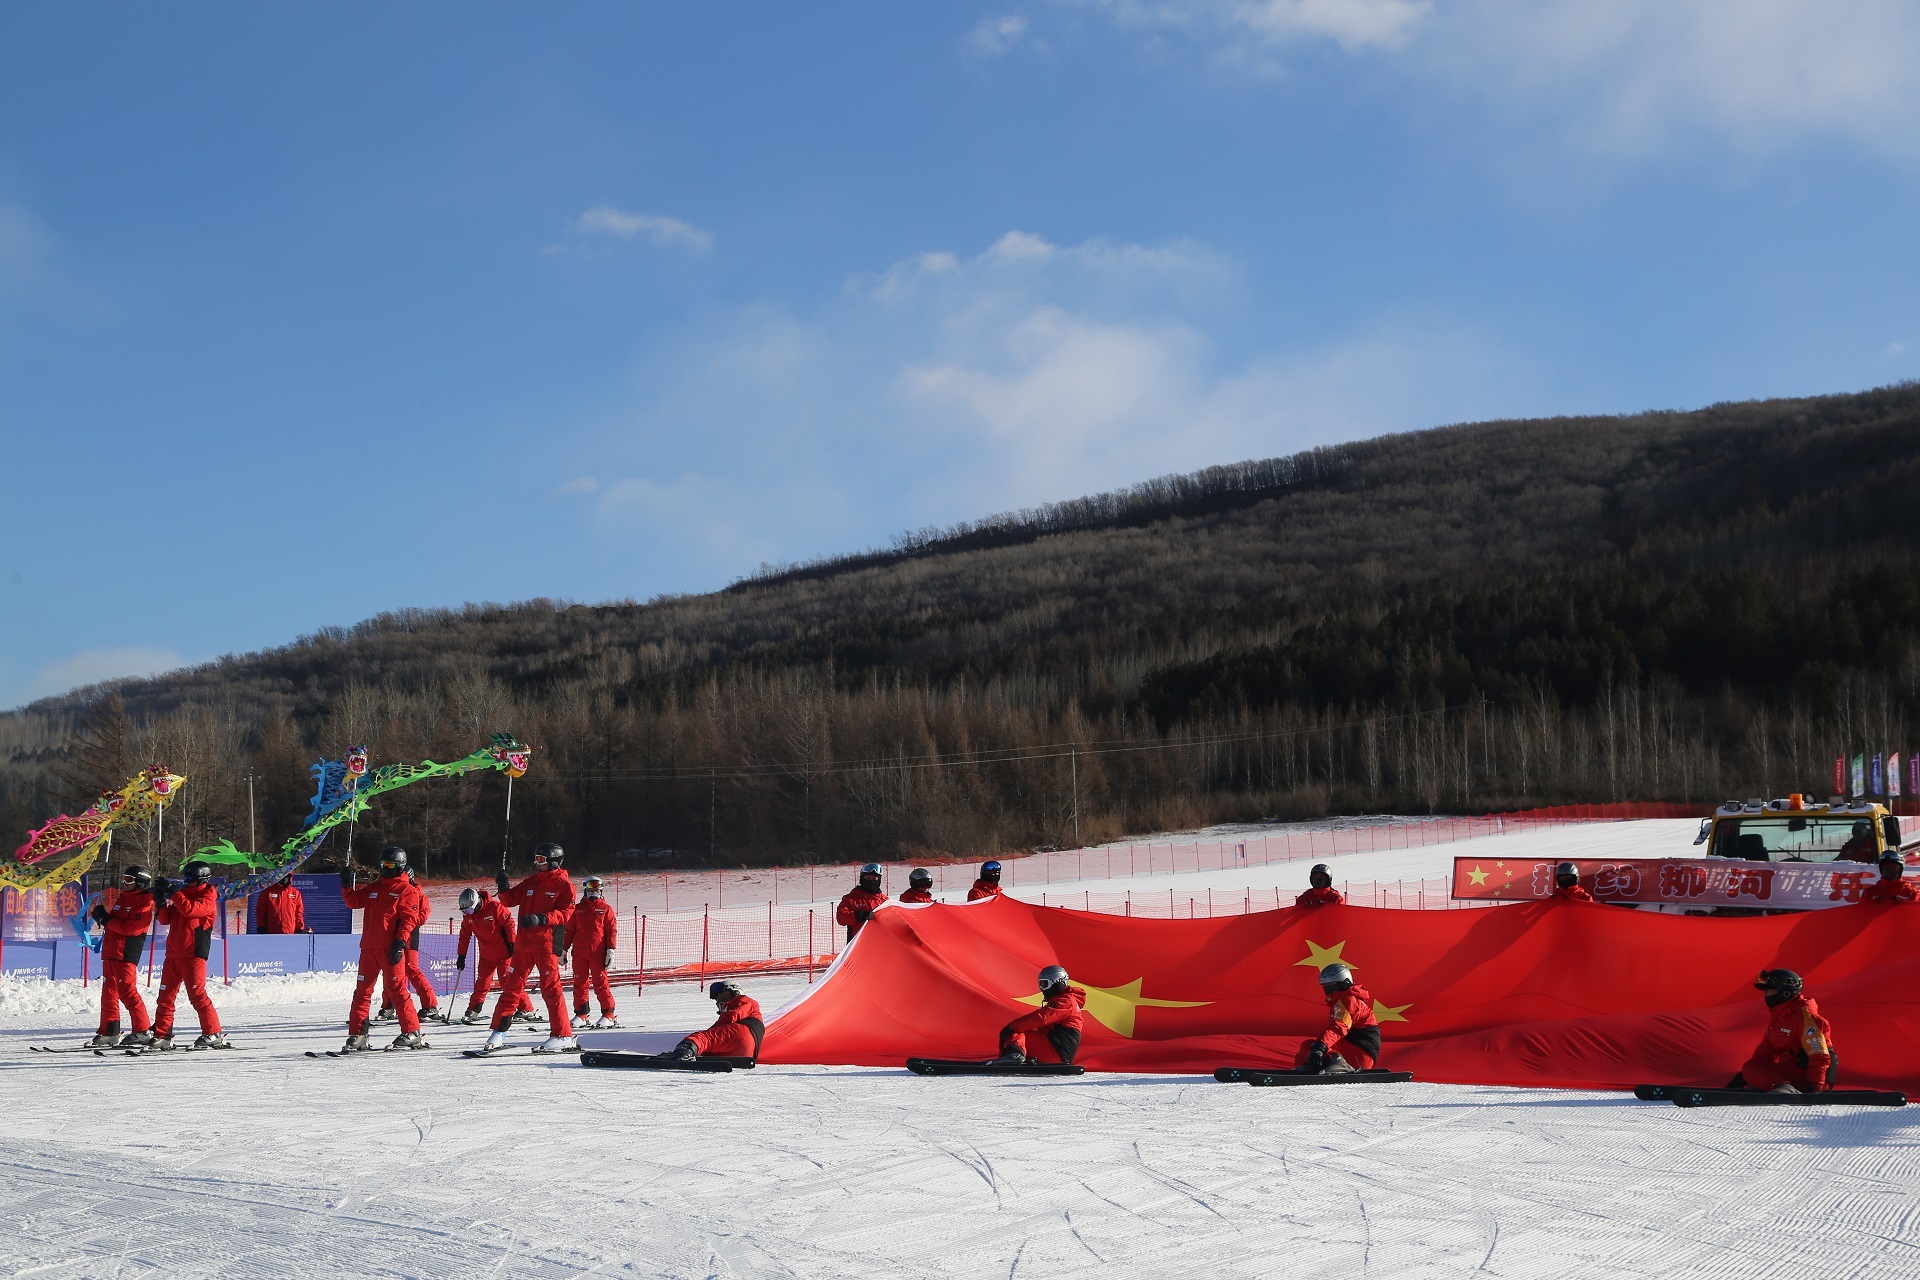 柳河青龙山滑雪场图片